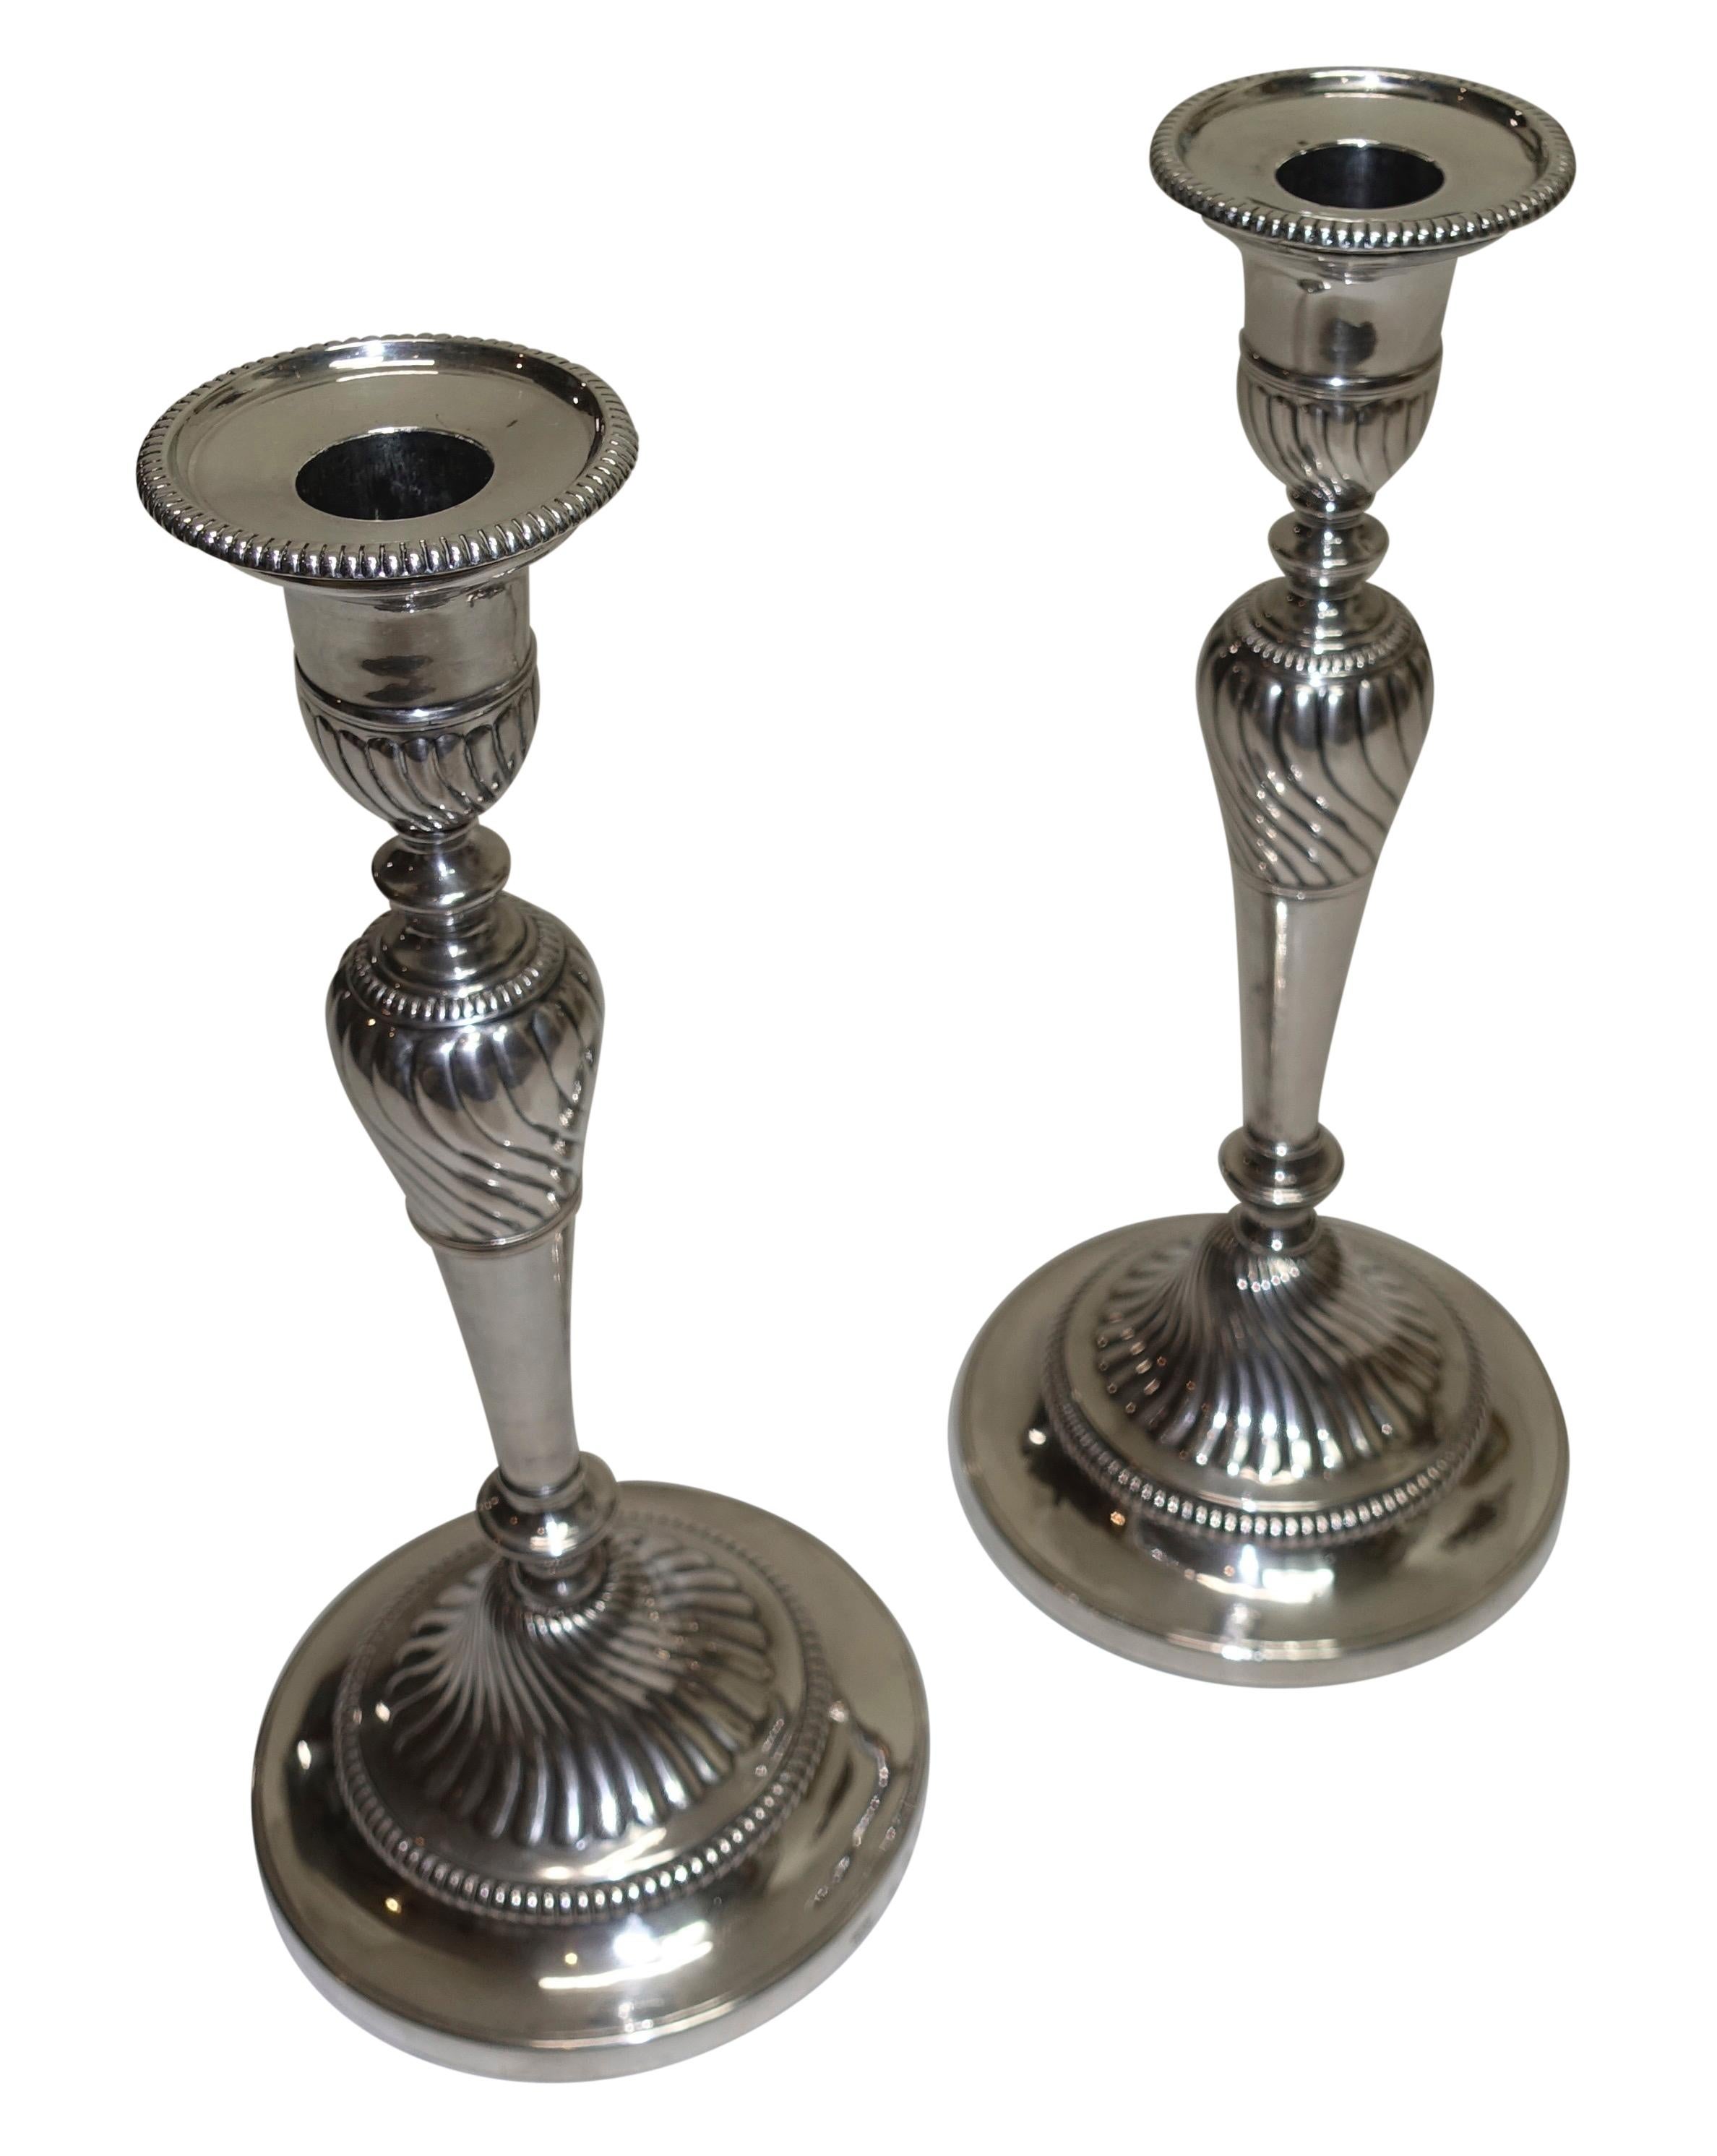 Une paire de chandeliers en argent sterling de George III avec des bases lestées, fabriqués par I G & CO., John Green, Roberts, Mosley & Co. Entièrement poinçonné sur les bases et la bobèche, Angleterre, fin du XVIIIe-début du XIXe siècle.